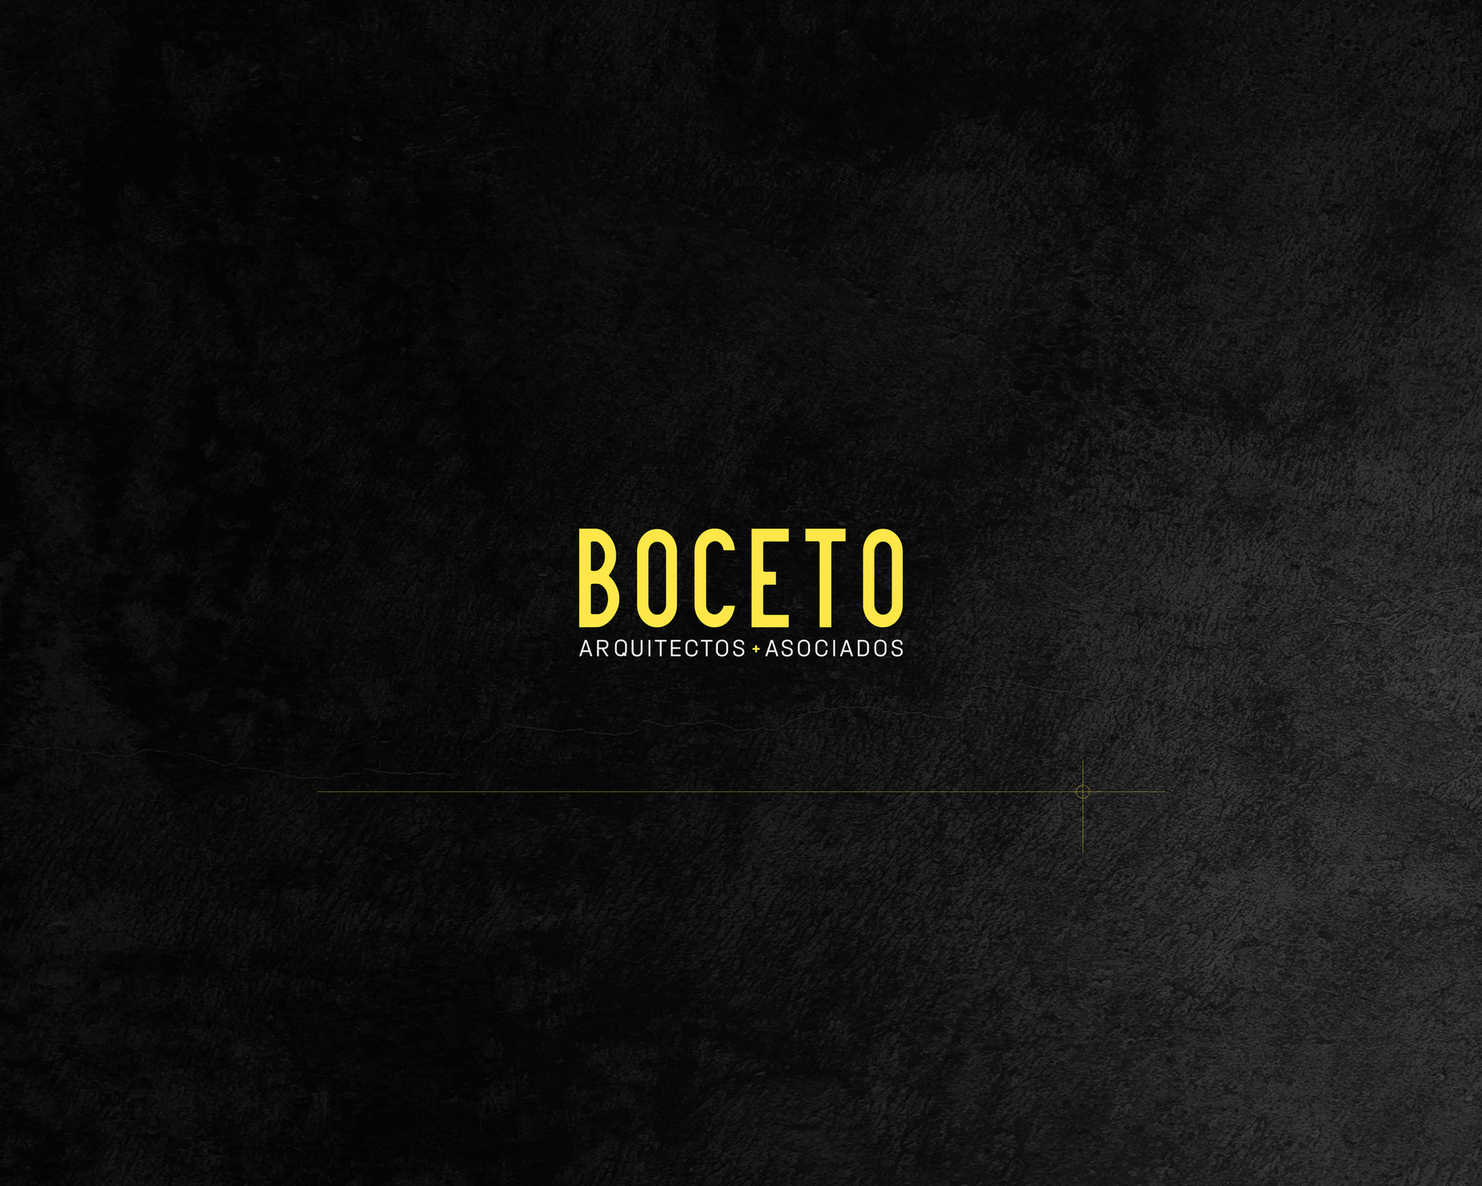 BOCETO ARQUITECTOS+ASOCIADOS